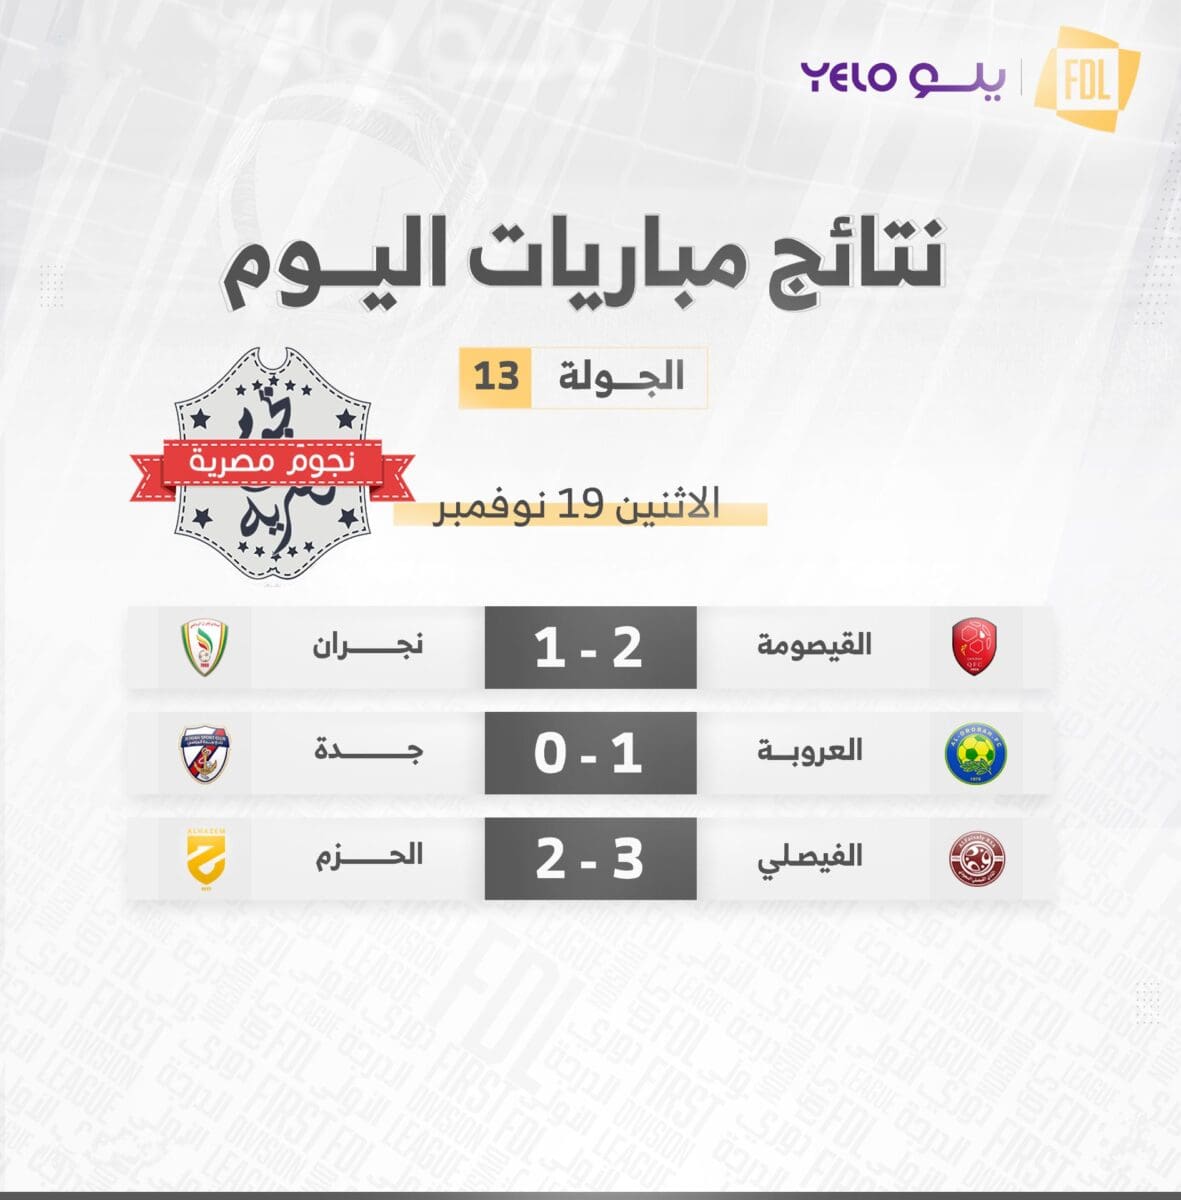 نتائج مباريات اليوم الأول في الجولة 13 من دوري يلو لأندية الدرجة الأولى السعودي